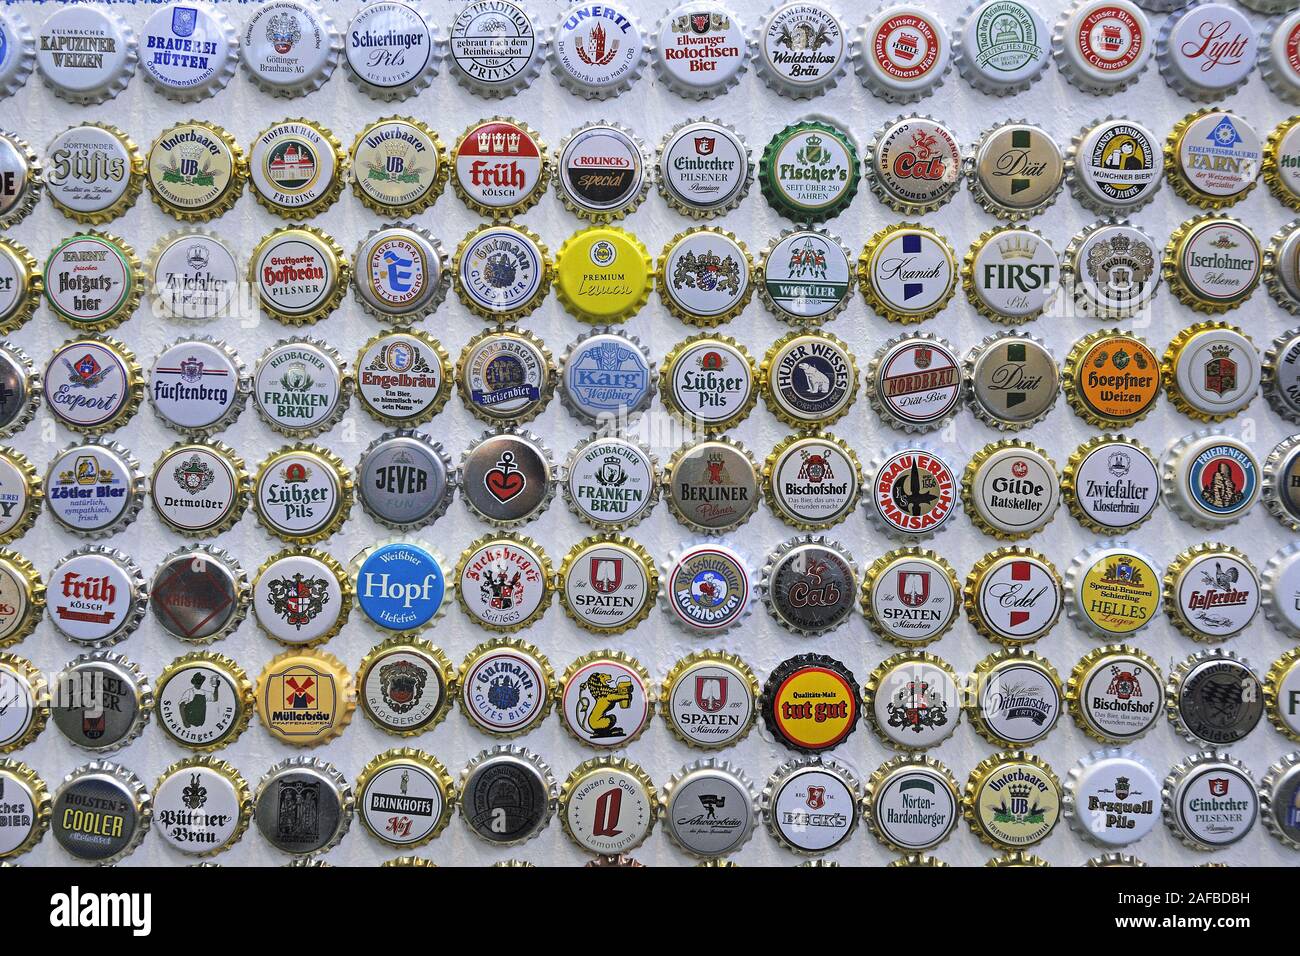 Kronkorken verschiedener Biersorten Stock Photo